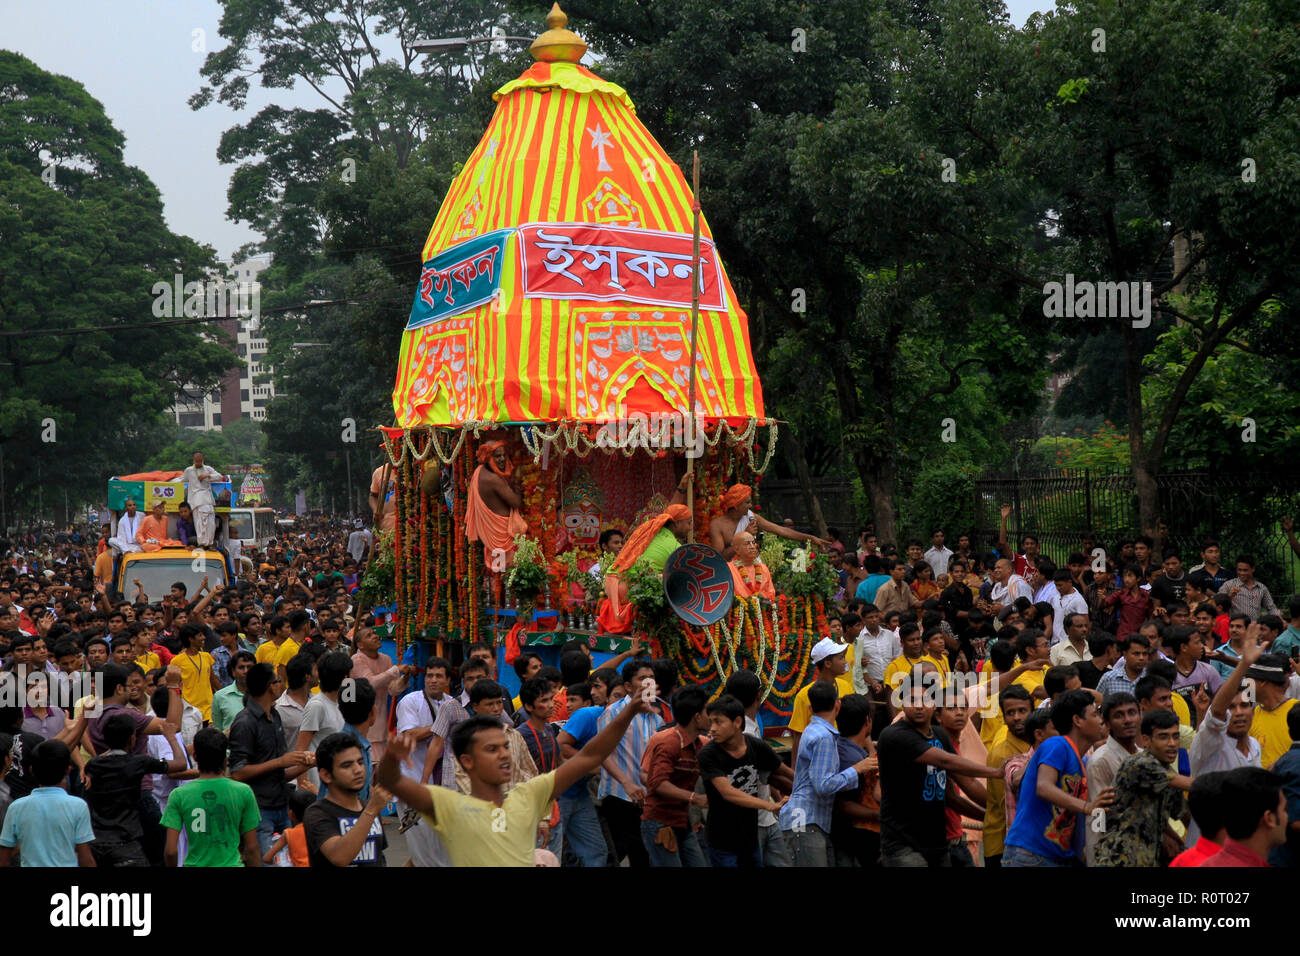 Les dévots hindous célèbrent le Rathajatra annuel Jagannath (défilé de char), l'un des plus grands festivals religieux des Hindous. Dhaka, Bangladesh Banque D'Images